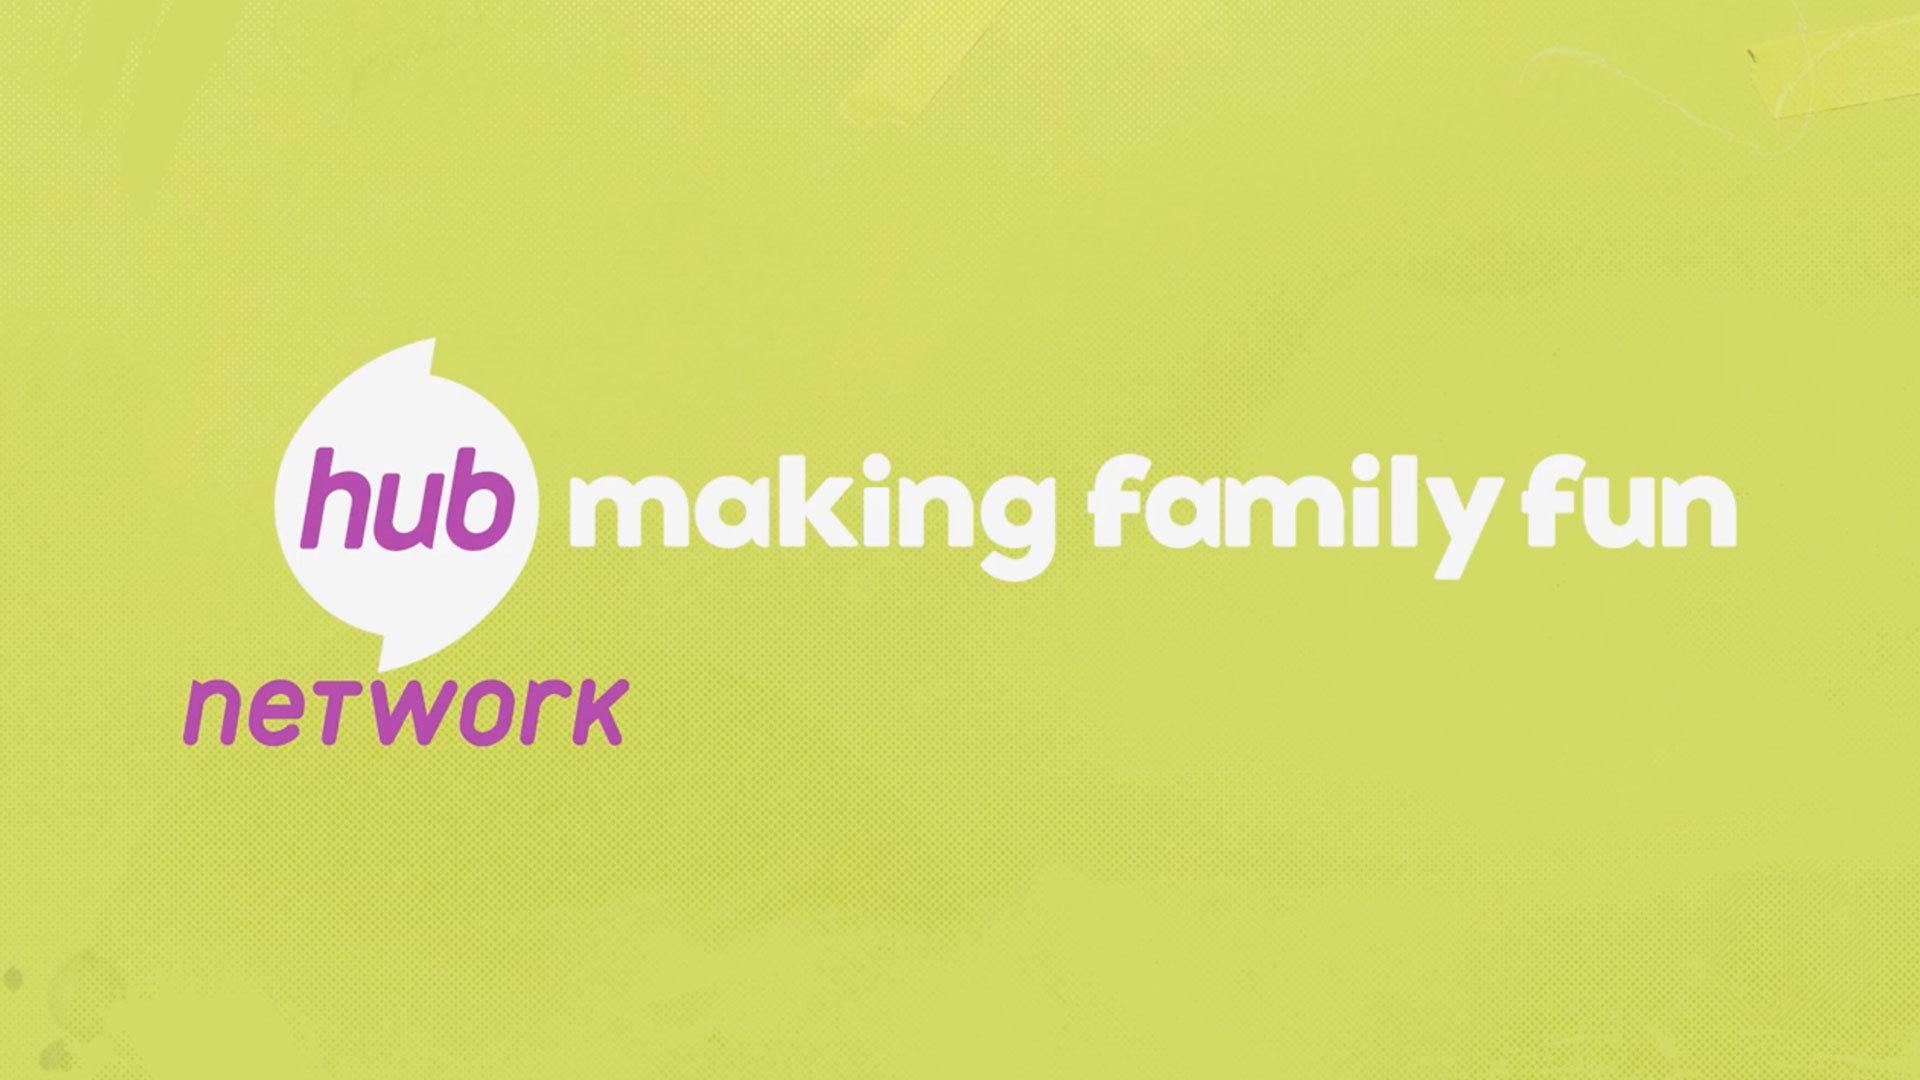 Hub Network Logo - Hub Network Typeface. PS Design. Branding & Design Studio